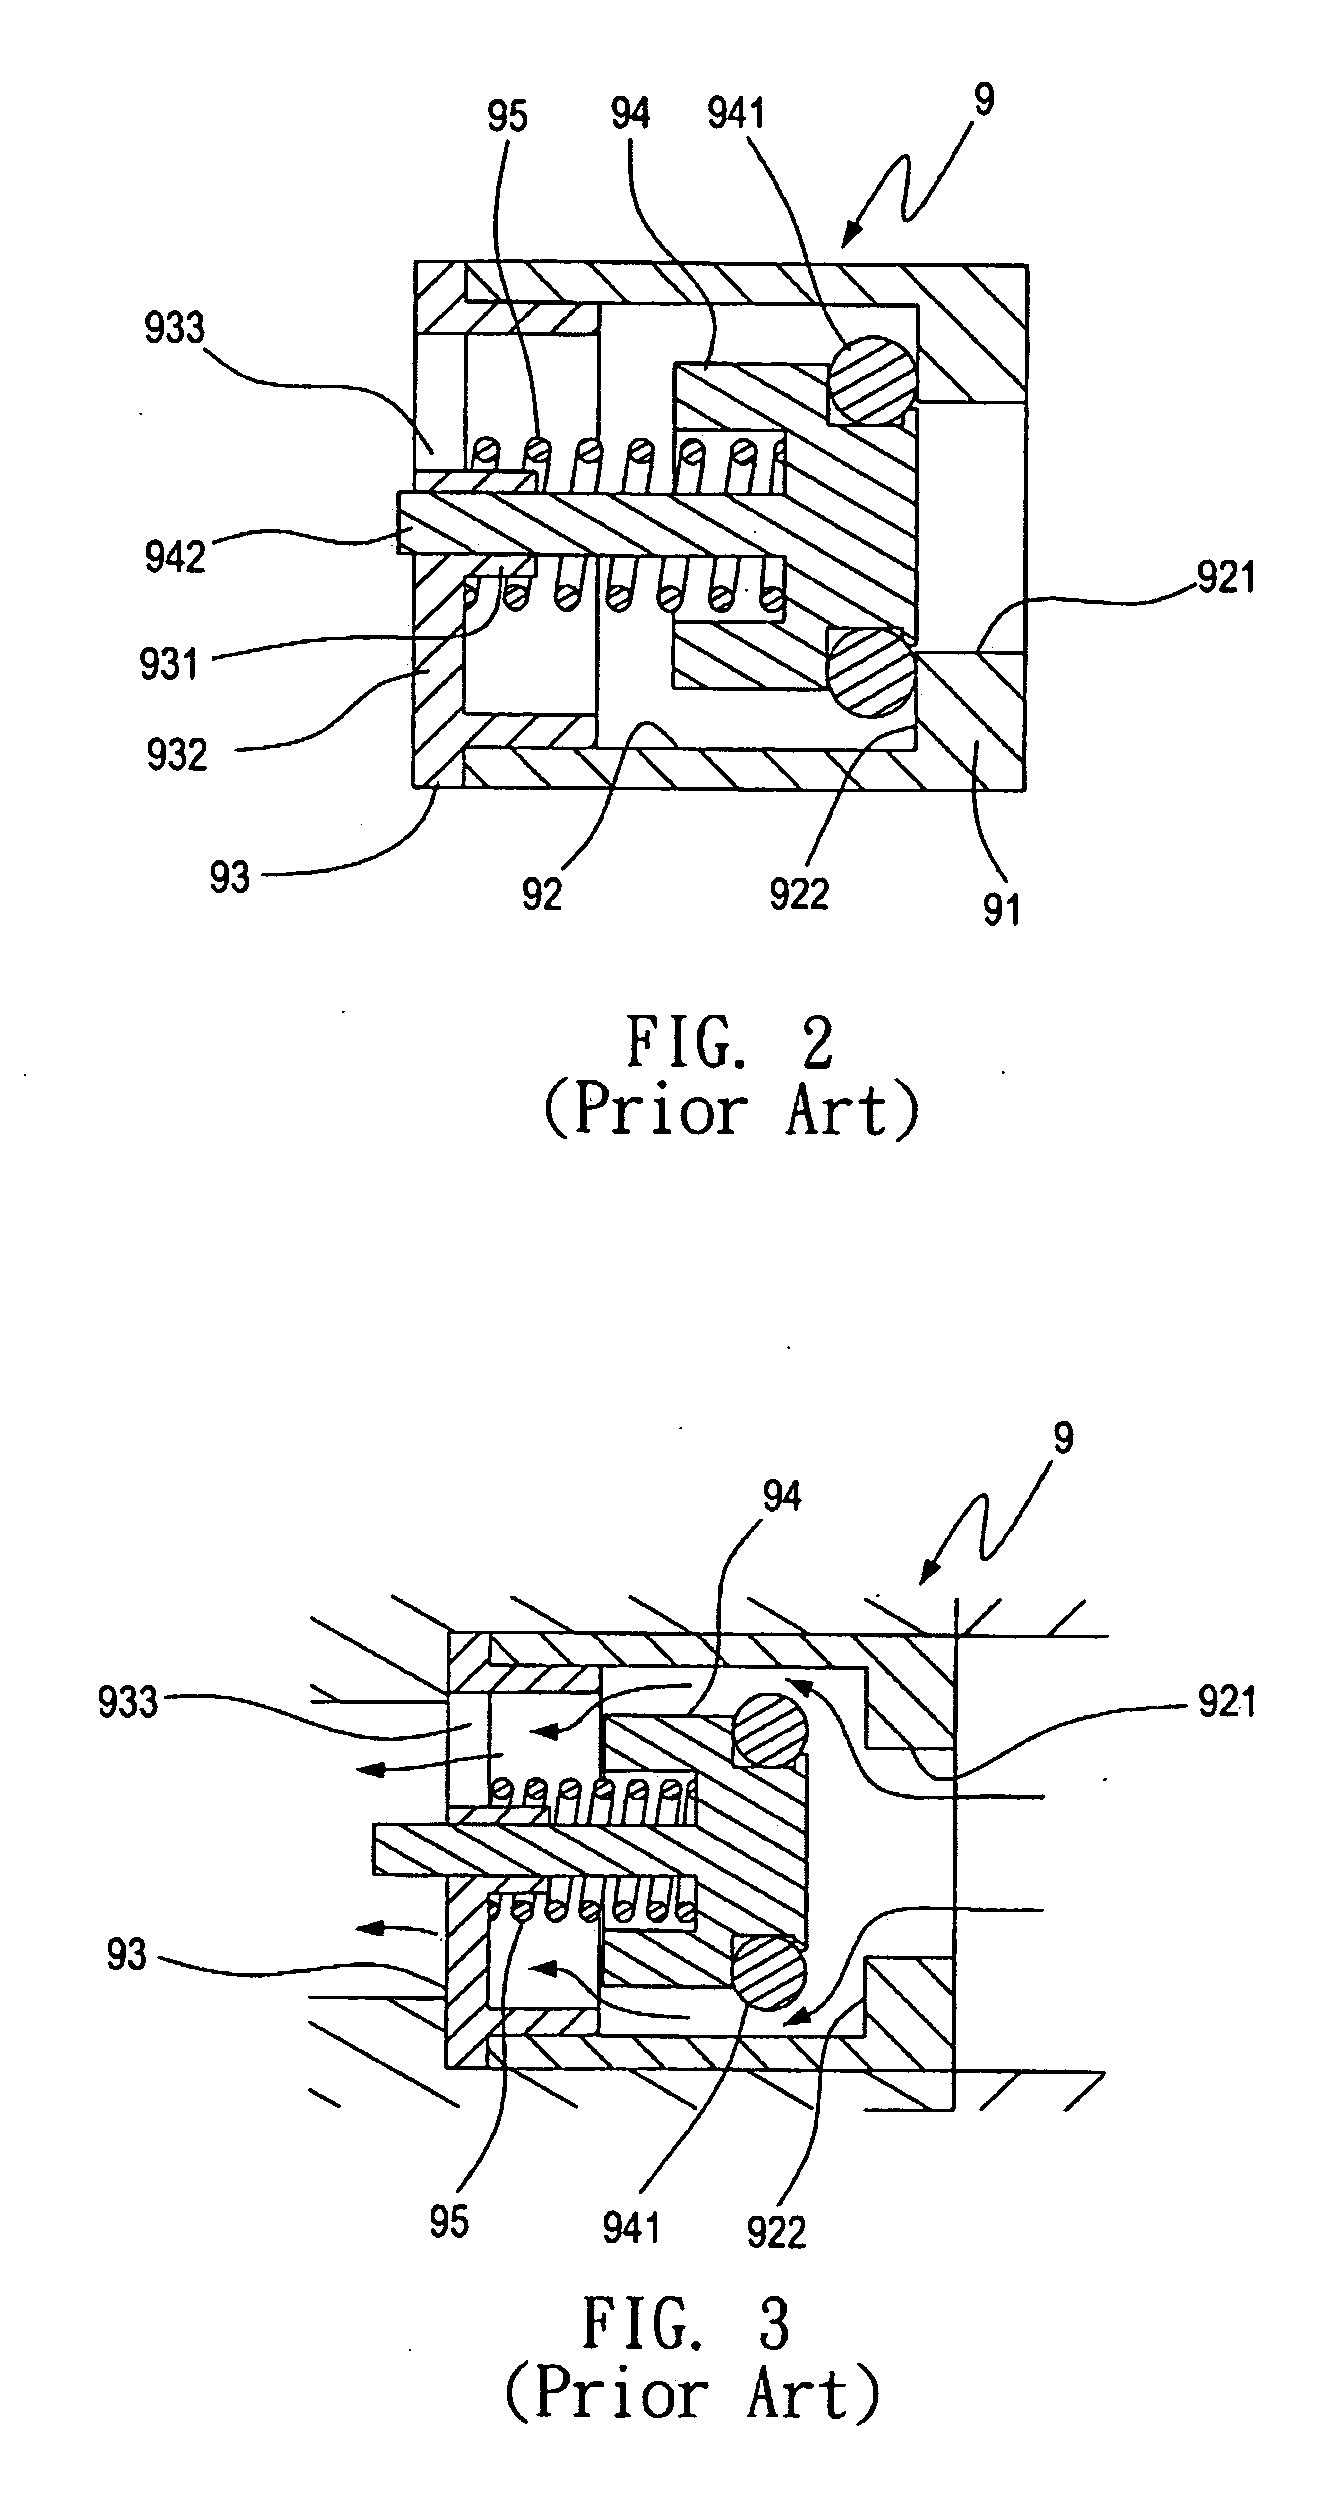 Anti-backflow valve